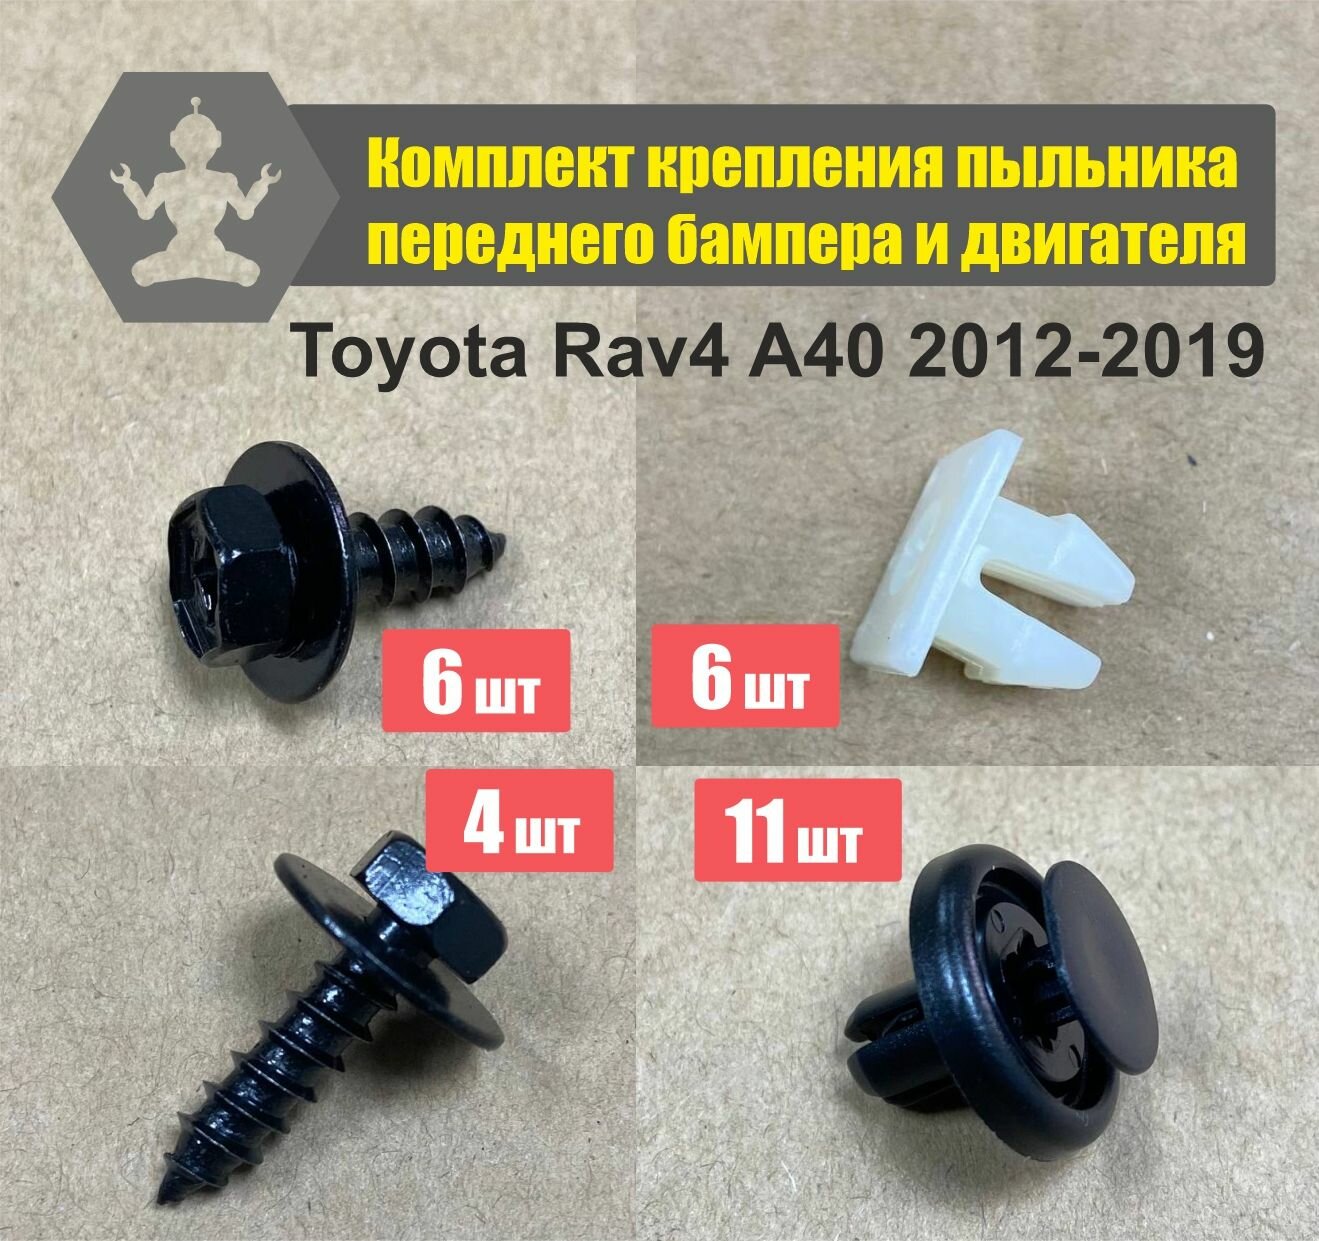 Комплект автокрепежа пыльника переднего бампера и пыльников двигателя Toyota Rav4 A40 2012-2019